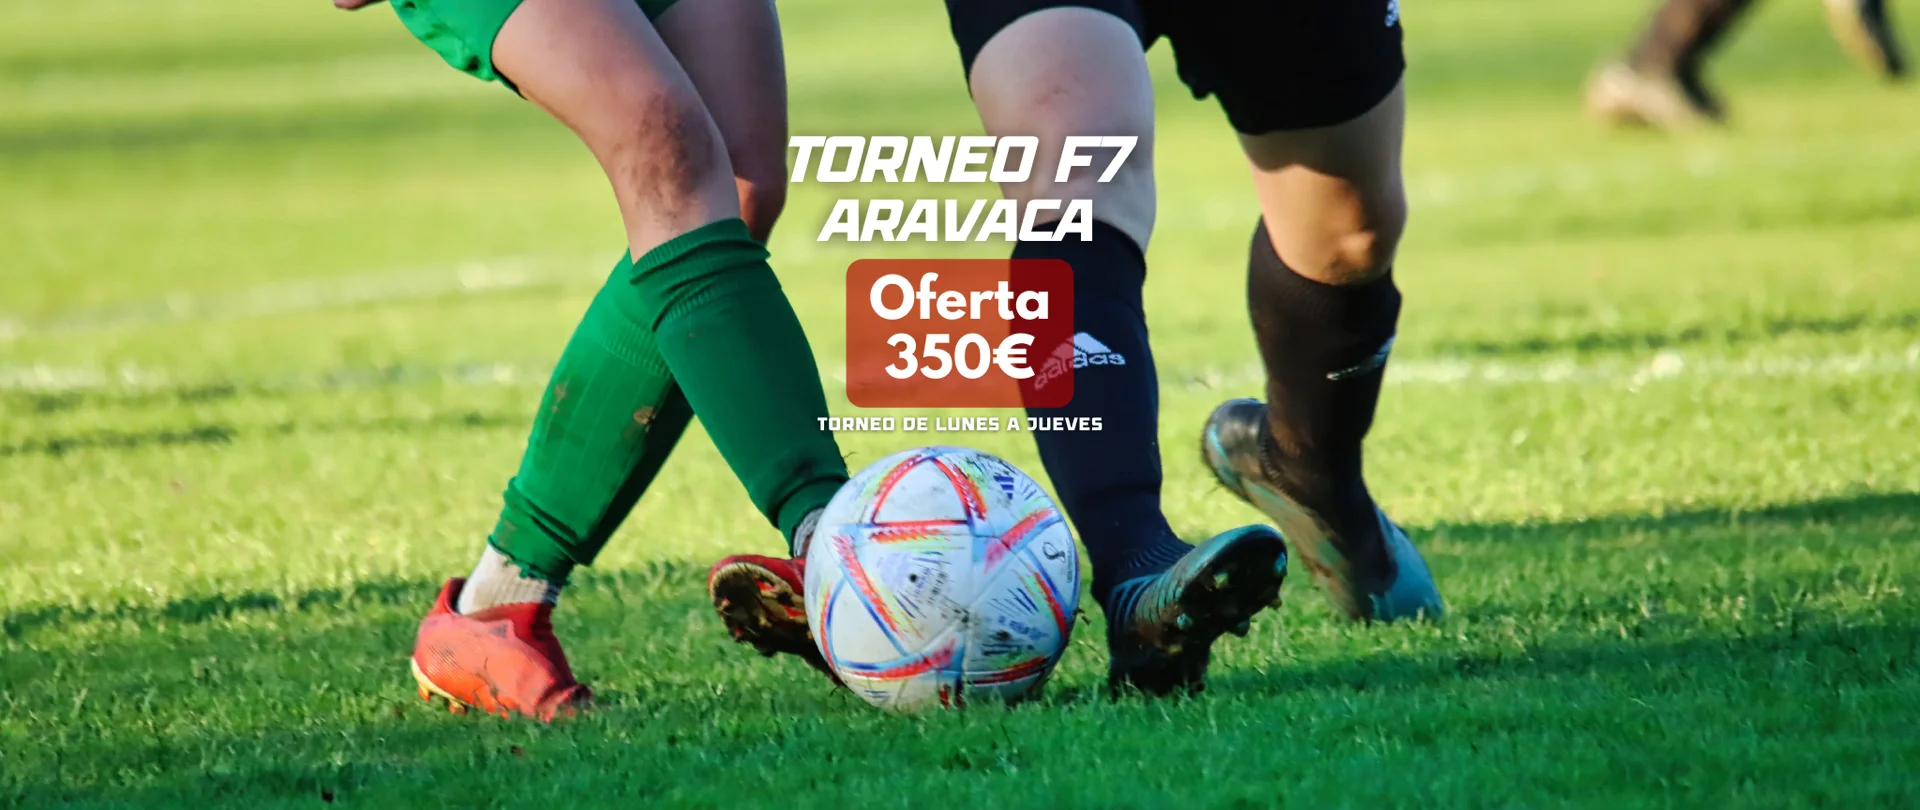 Promoción Torneo Fútbol 7 en Aravaca